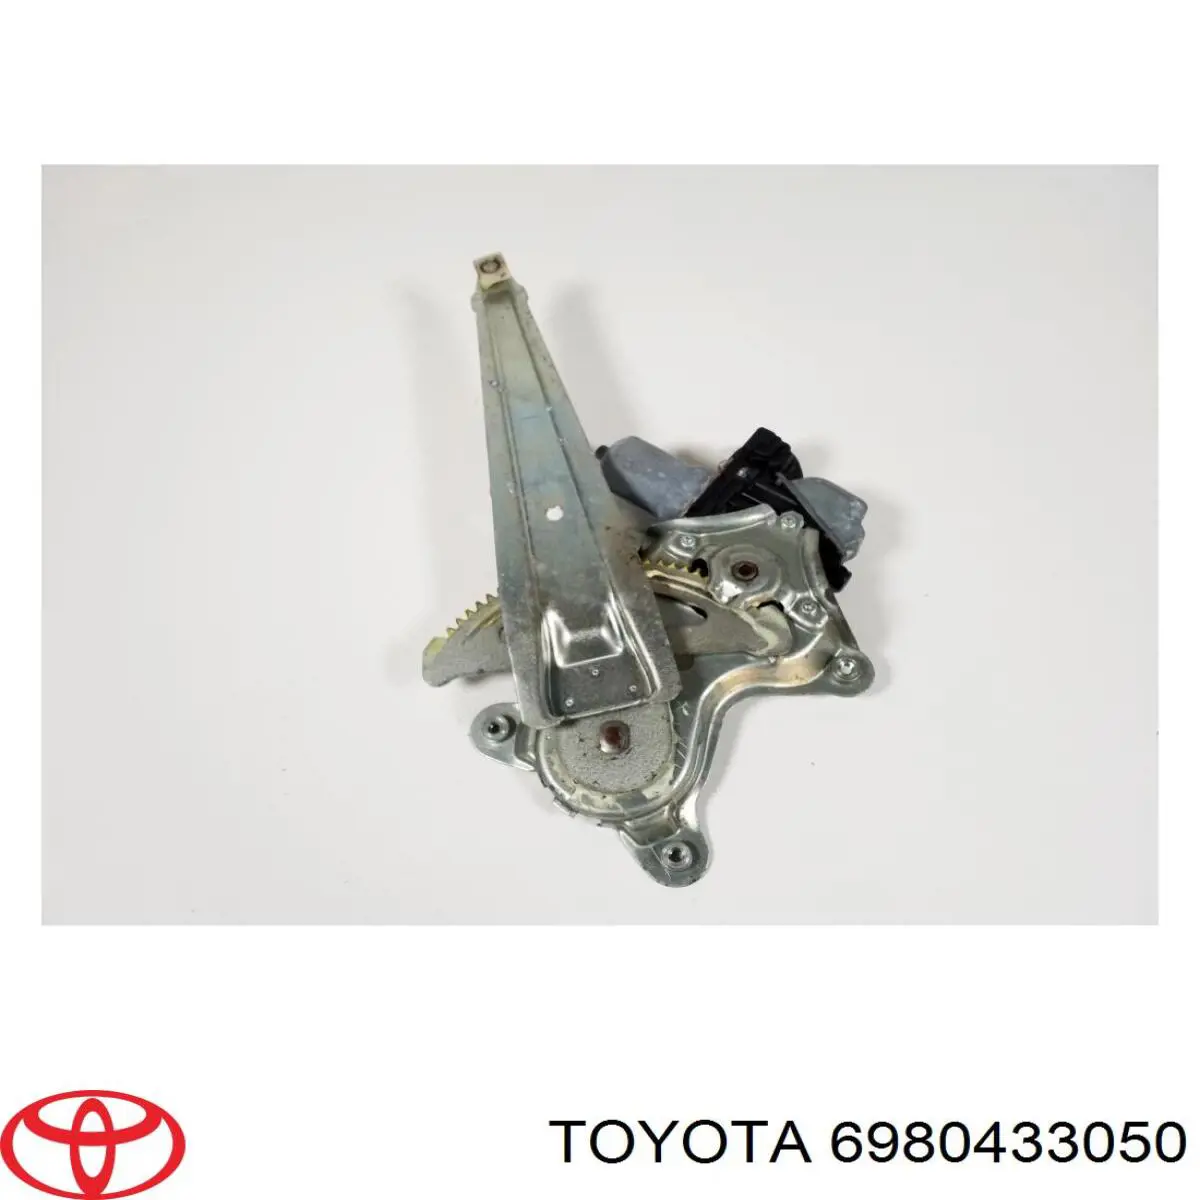 Mecanismo de acionamento de vidro da porta traseira esquerda para Toyota Camry (V40)